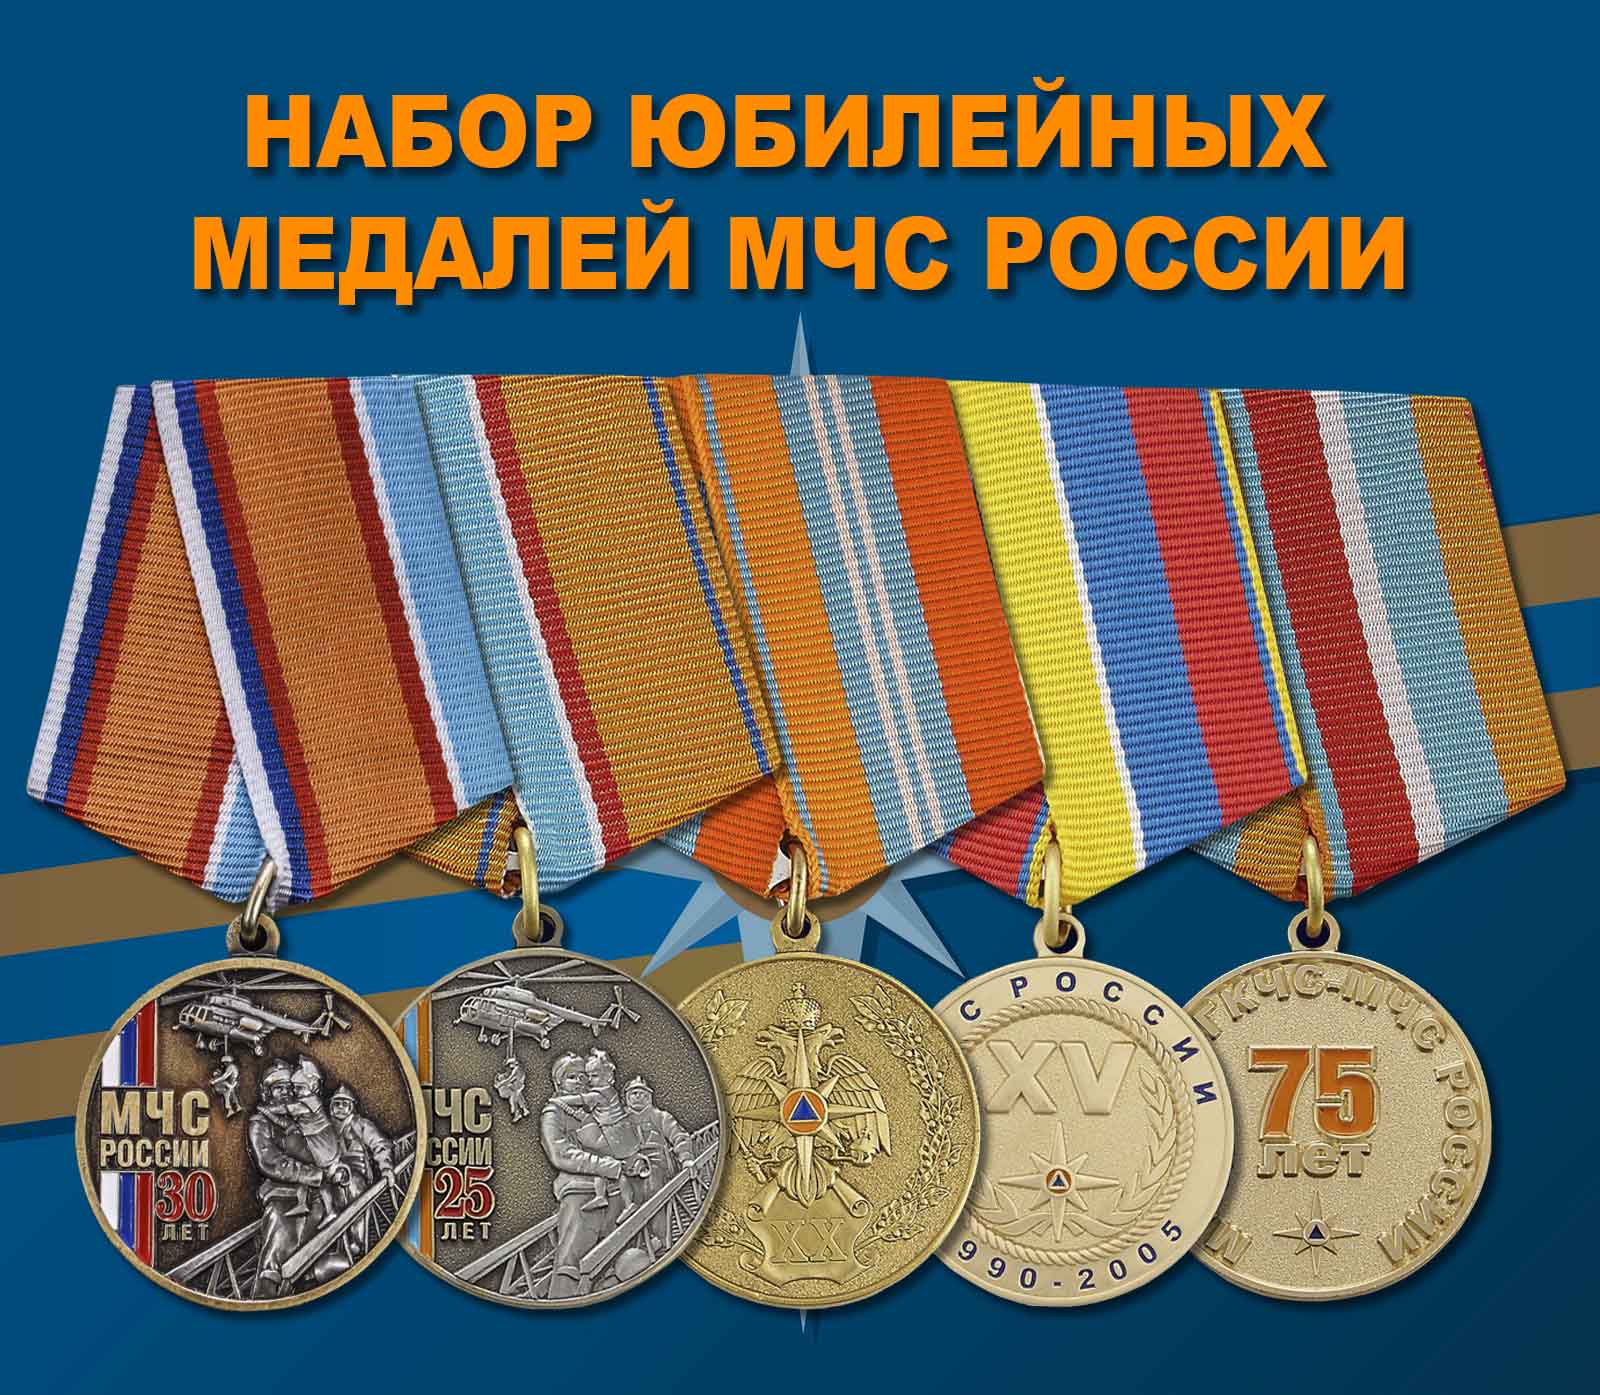 Купить набор юбилейных медалей МЧС России